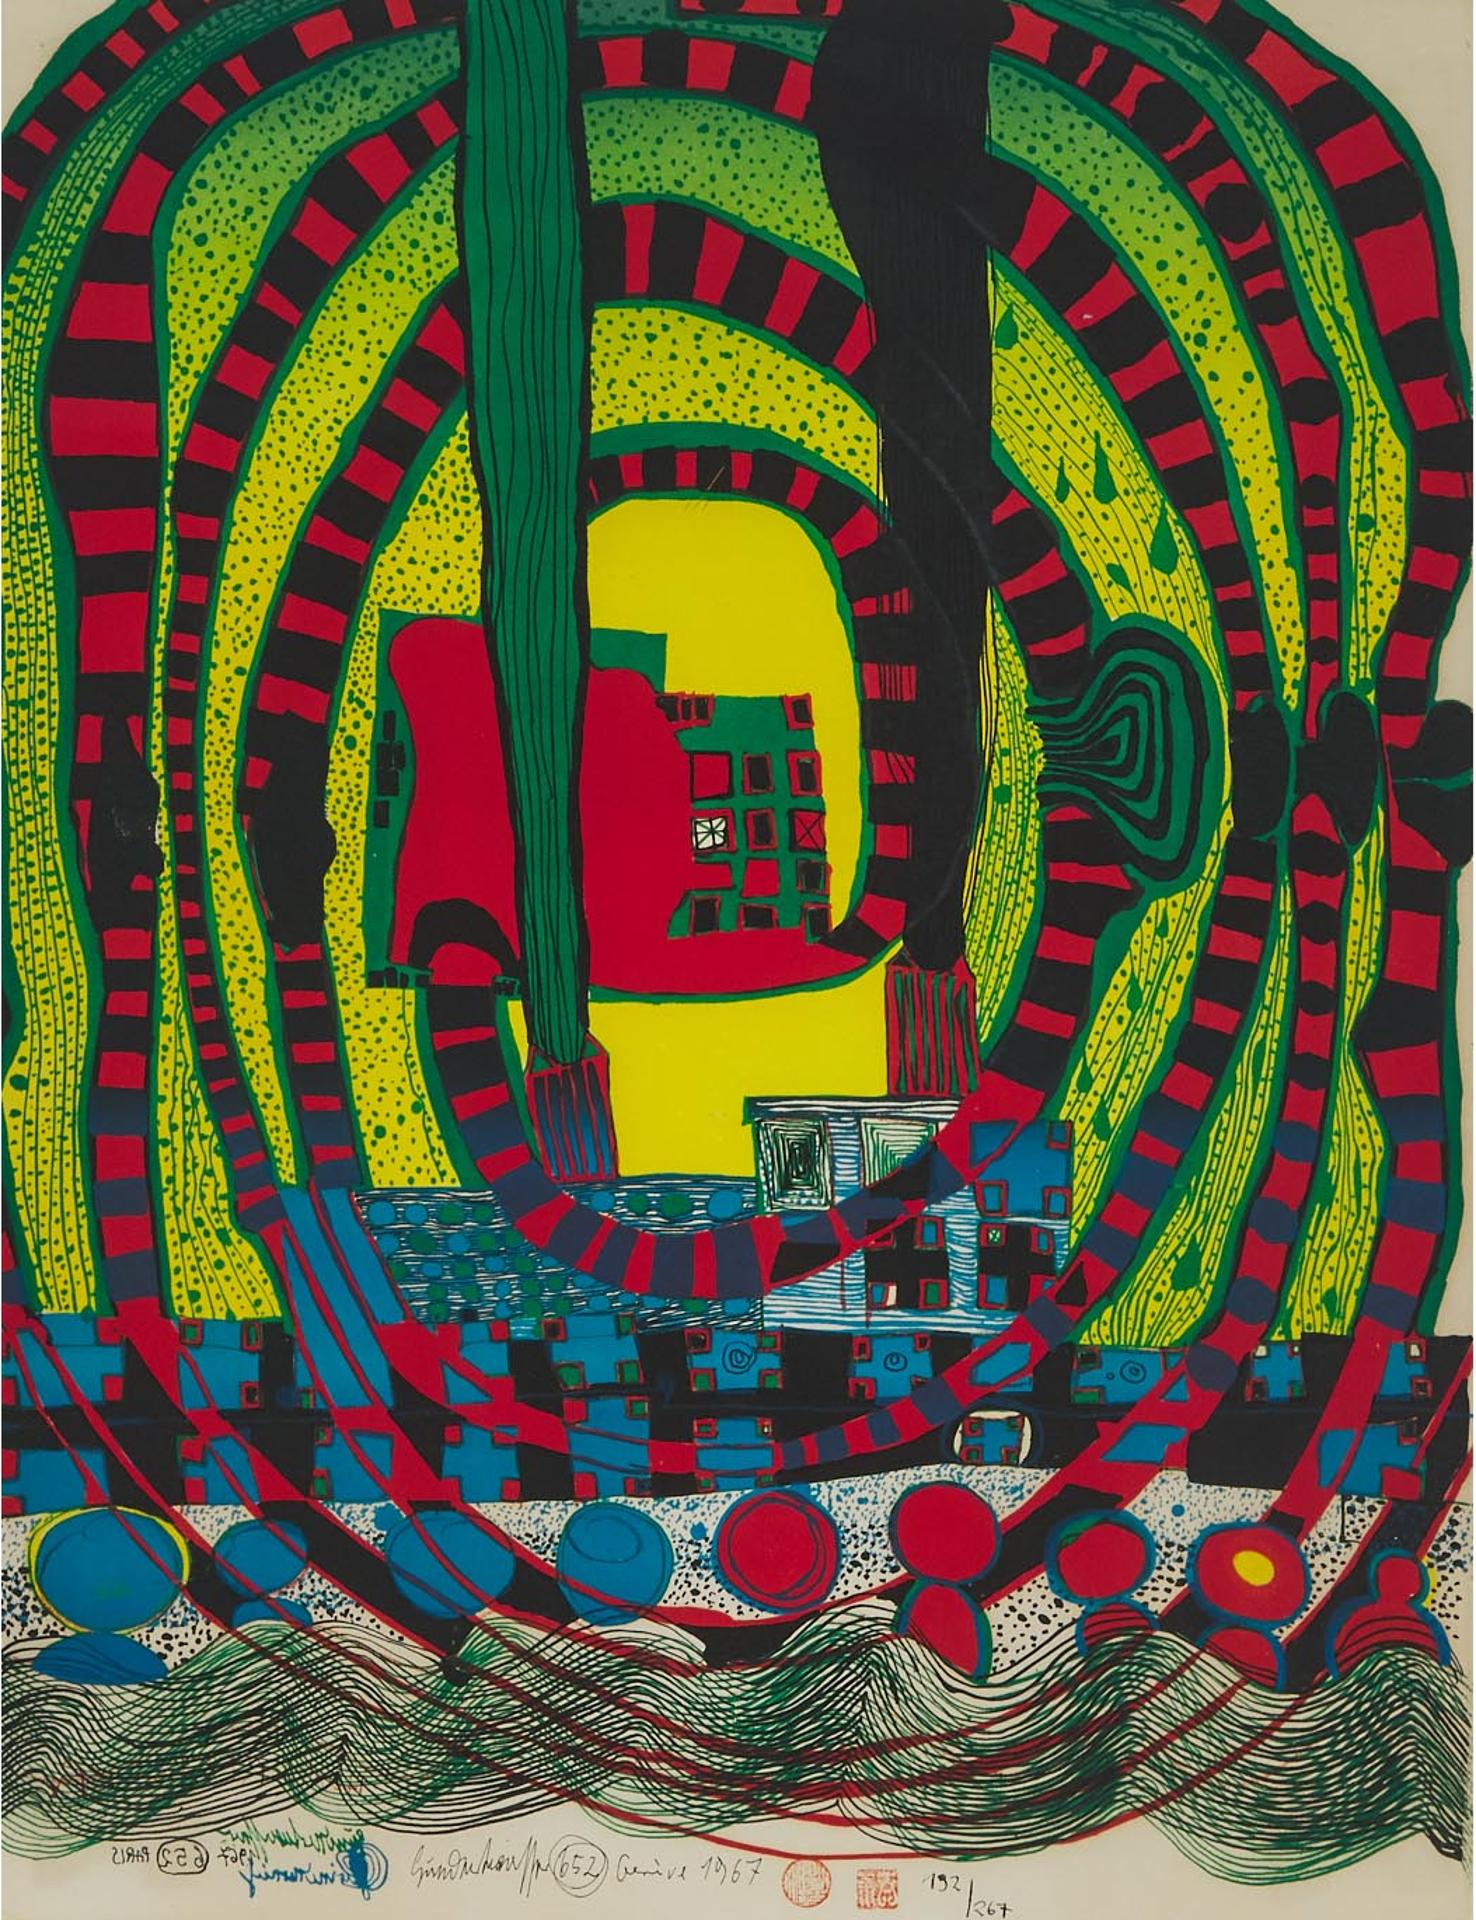 Friedensreich Hundertwasser (1928-2000) - Seereise Ii - Reise Zur See Und Mit Der Bahn (Journey Ii And Travel By Rail), 1967 [koschatzky, 25]